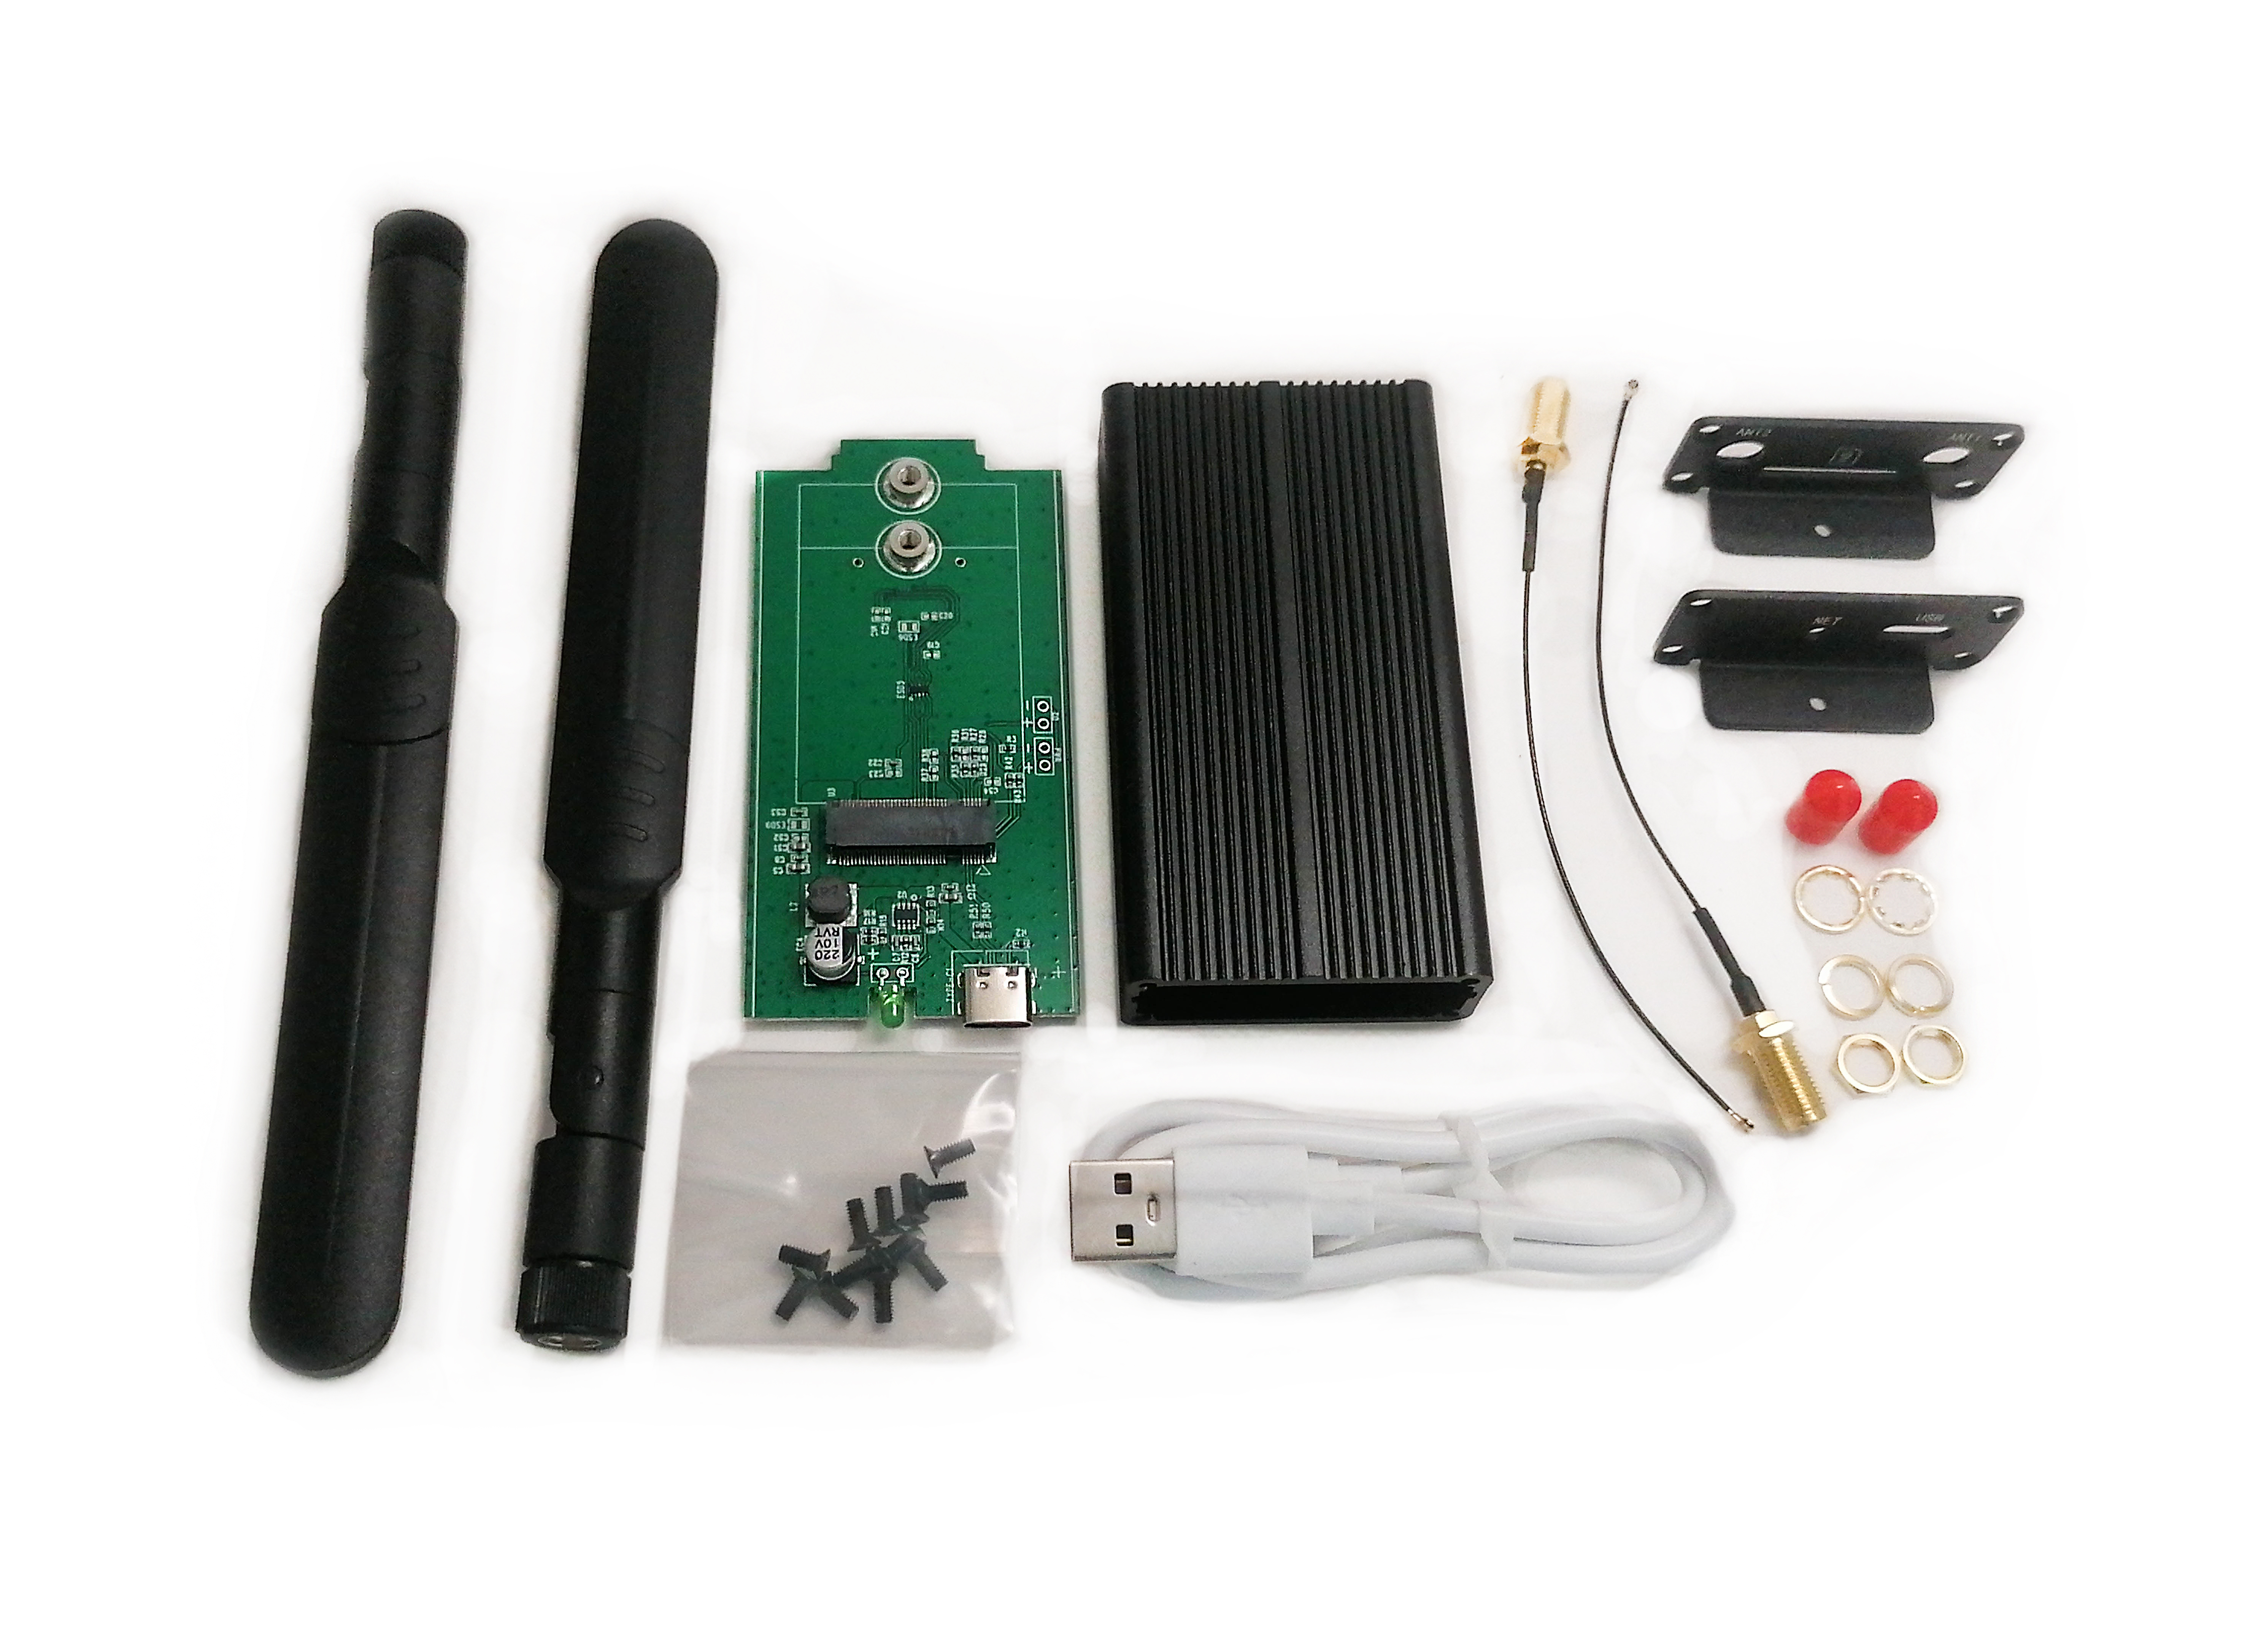 Детальное изображение товара "Адаптер USB Box для M.2 модемов" из каталога оборудования Антенна76